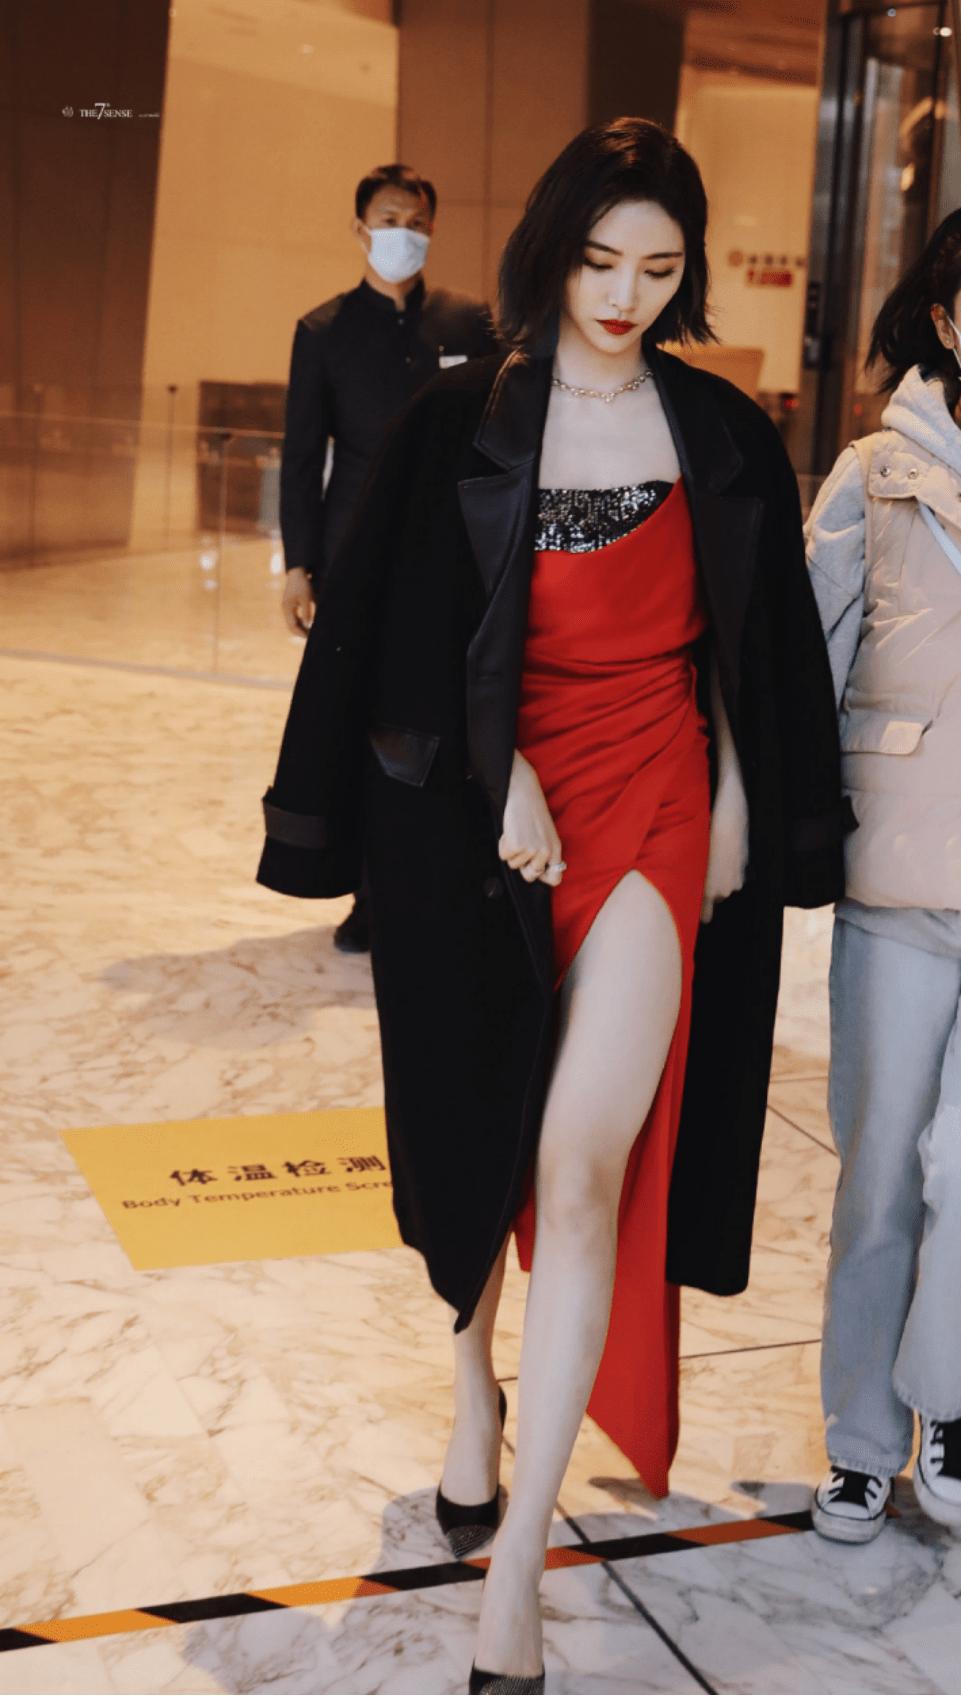 许佳琪这身材堪称"完美"!穿红色抹胸礼服,秀长腿和直角肩绝美